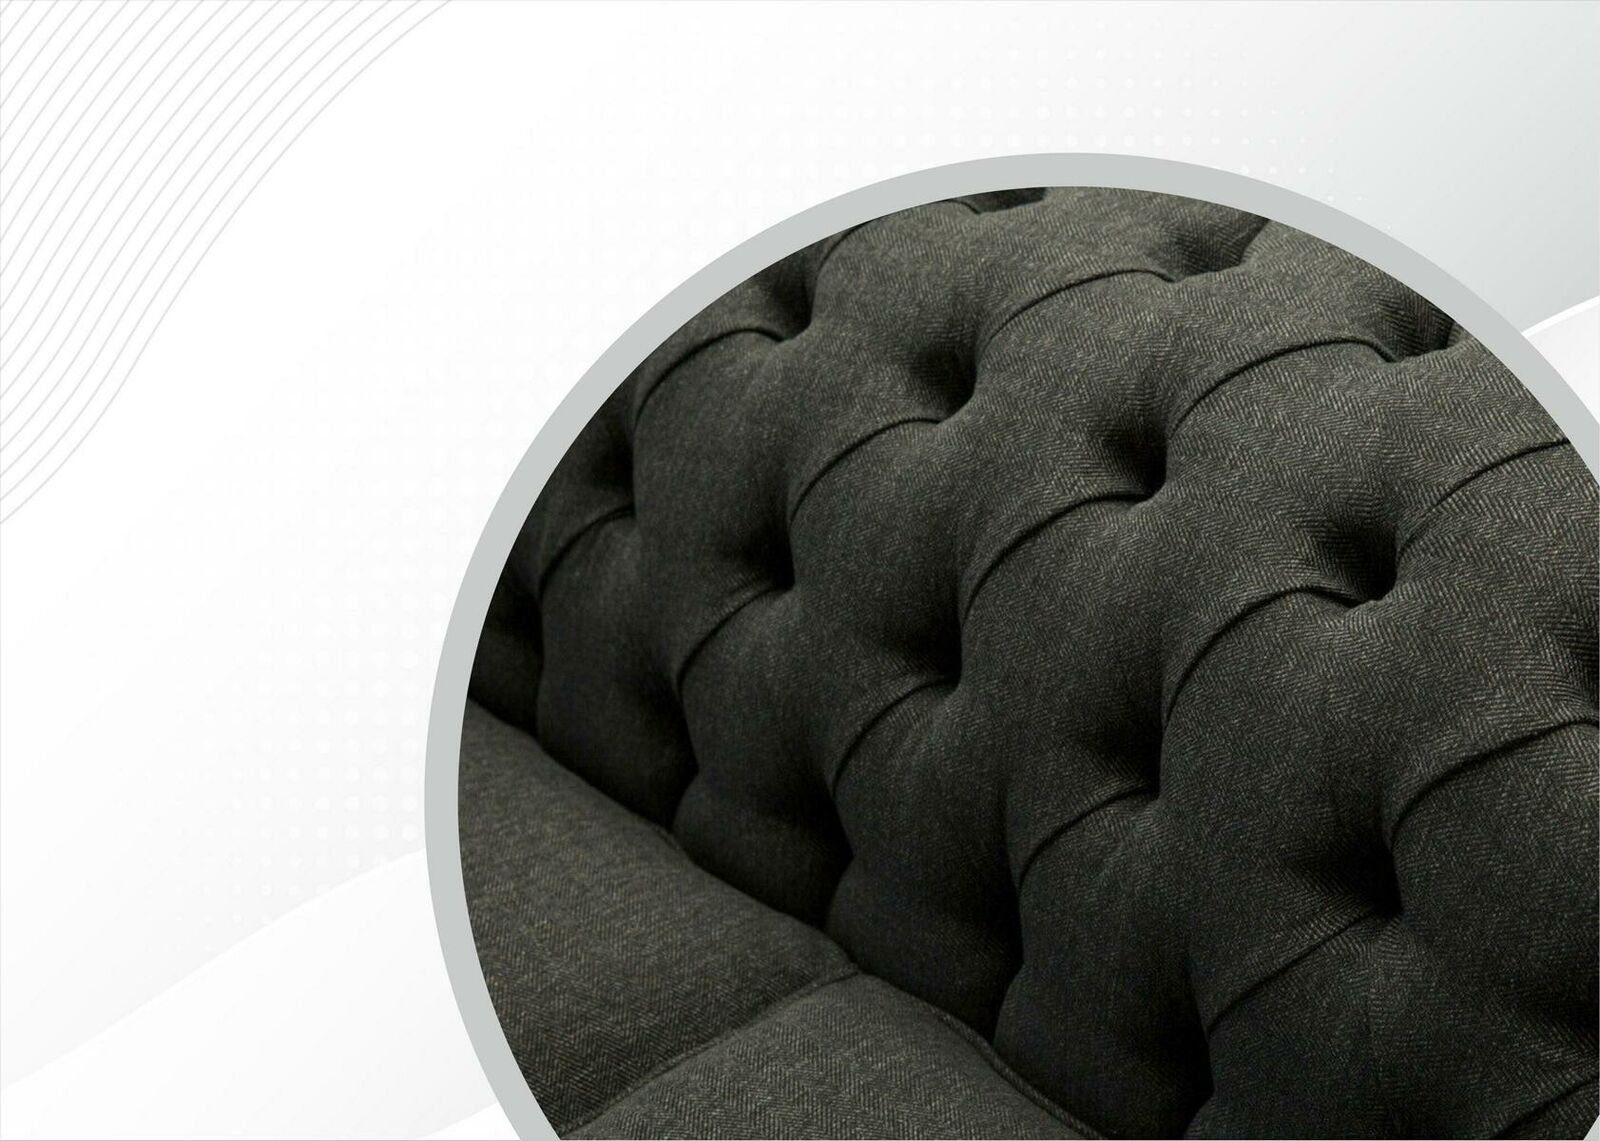 JVmoebel Chesterfield-Sofa, Chesterfield Dreisitzer Sofa Moderne Sofas Couch Grau Couchen Design